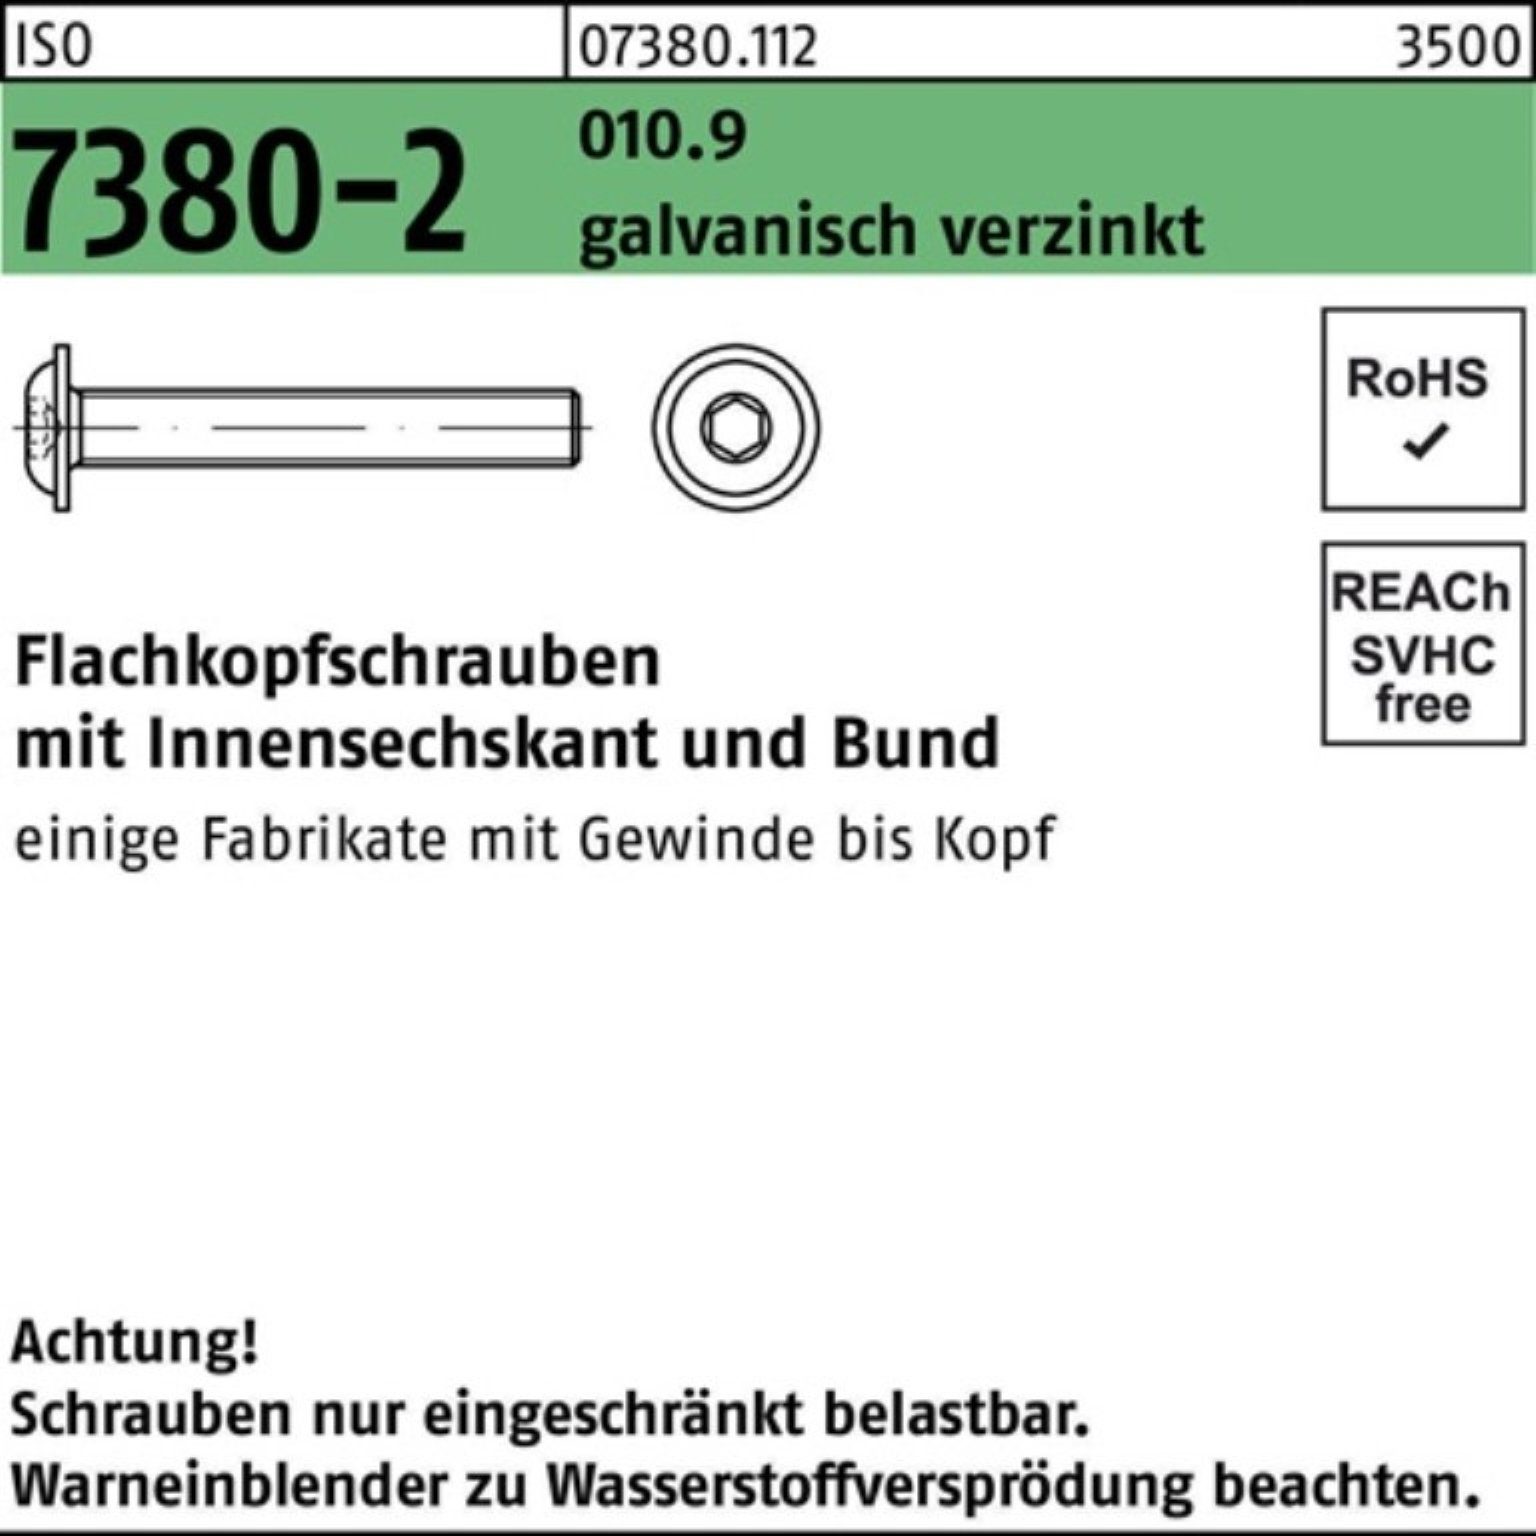 Reyher Schraube 500er Pack Flachkopfschraube 7380-2 010.9 Bund/Innen-6kt M5x25 gal ISO